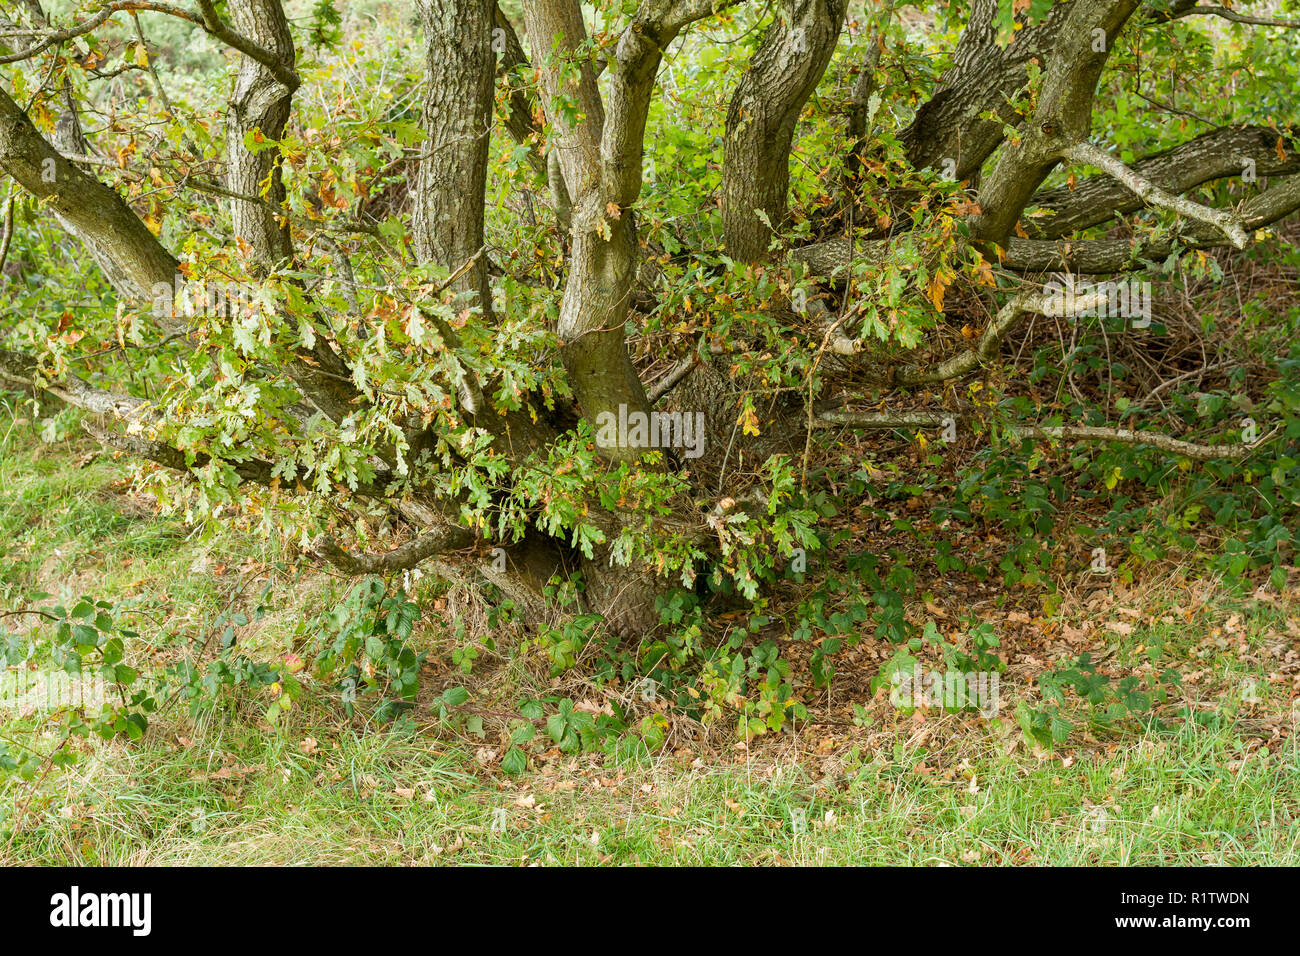 Base d'un vieux chêne pédonculé, Quercus robur, le chêne pédonculé, le chêne arbre avec tronc fendu, à l'automne, UK Banque D'Images